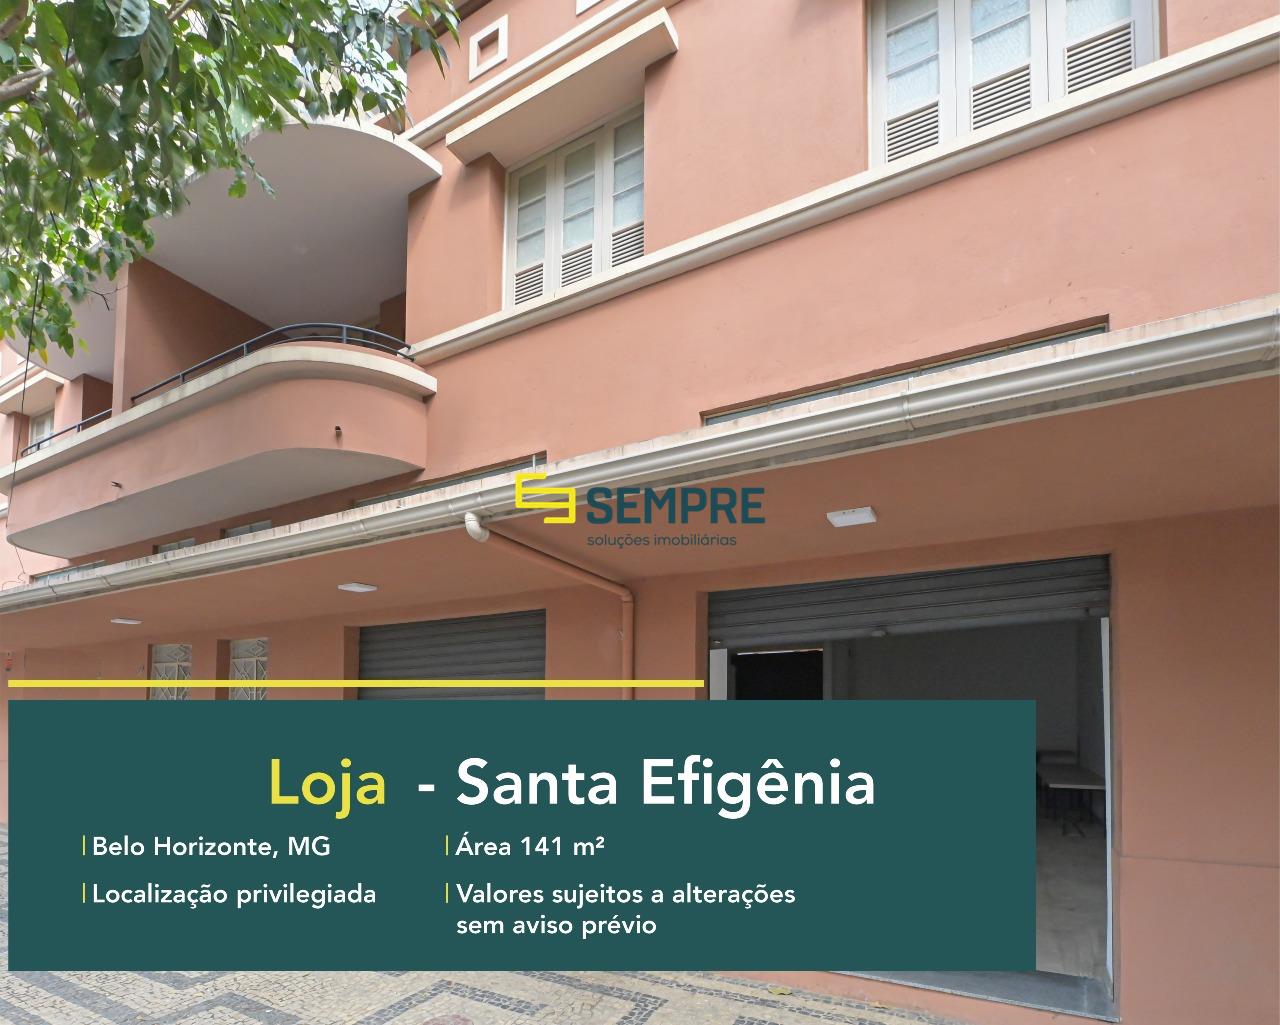 Loja para alugar no bairro Santa Efigênia em Belo Horizonte. O Estabelecimento comercial conta, sobretudo, com área de 141 m².